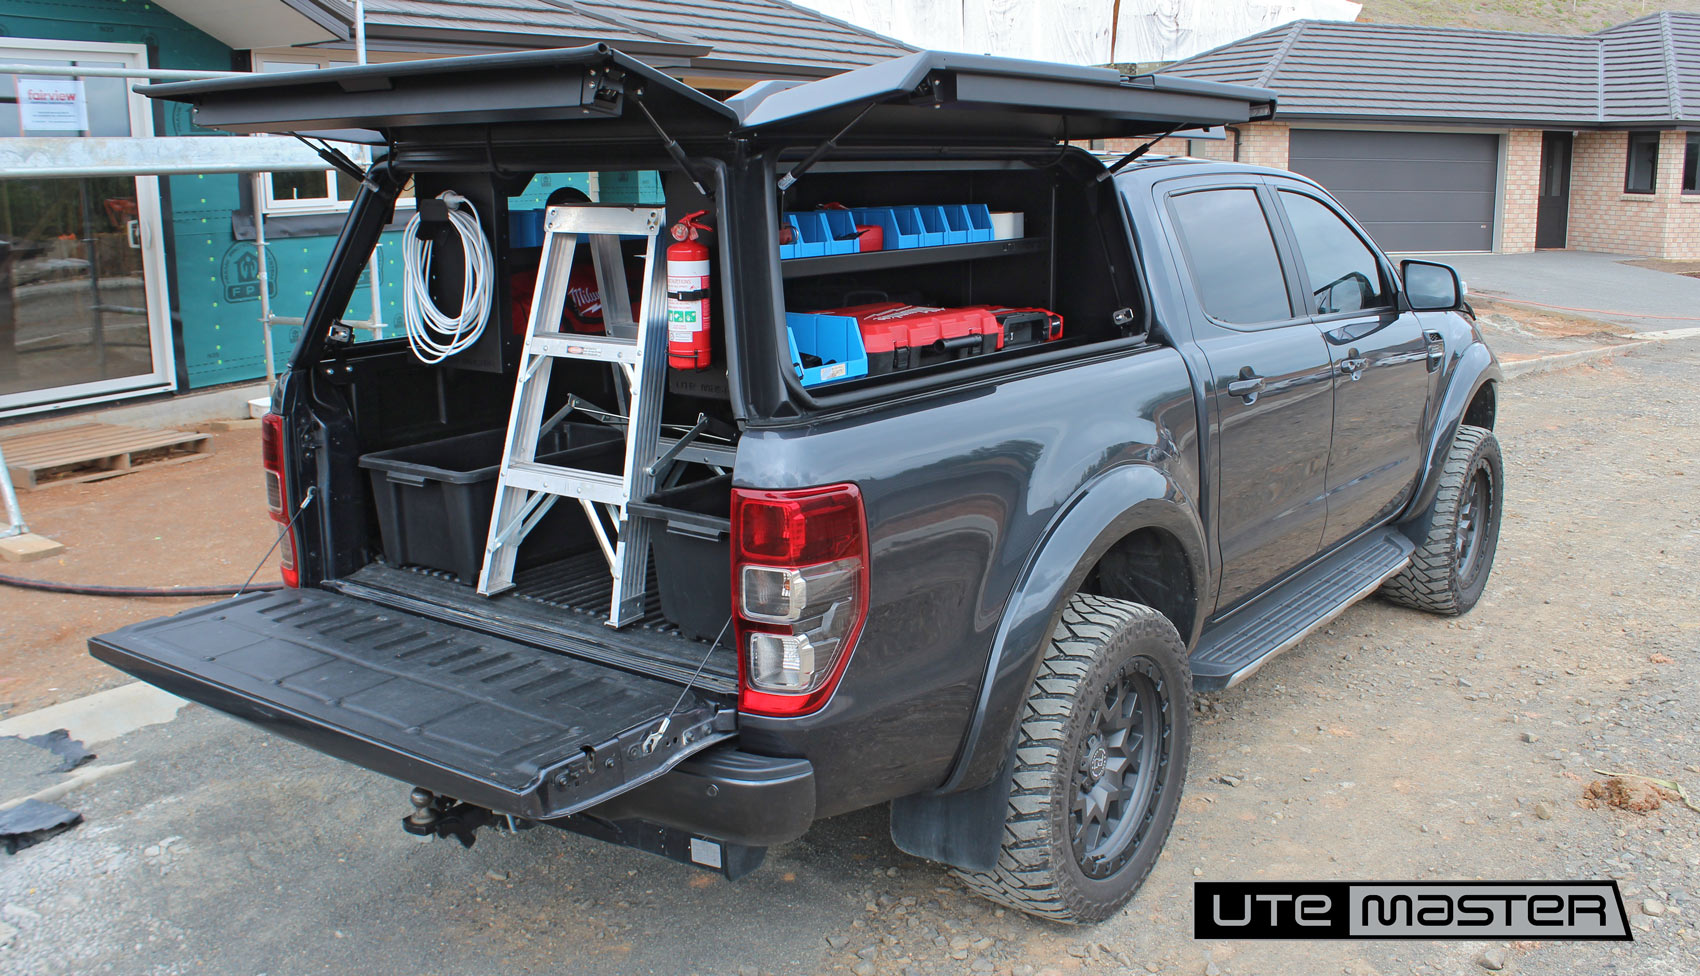 Tradie Ute Setup - Utemaster Centurion Canopy Shelving - Builder - Ute Ford Ranger